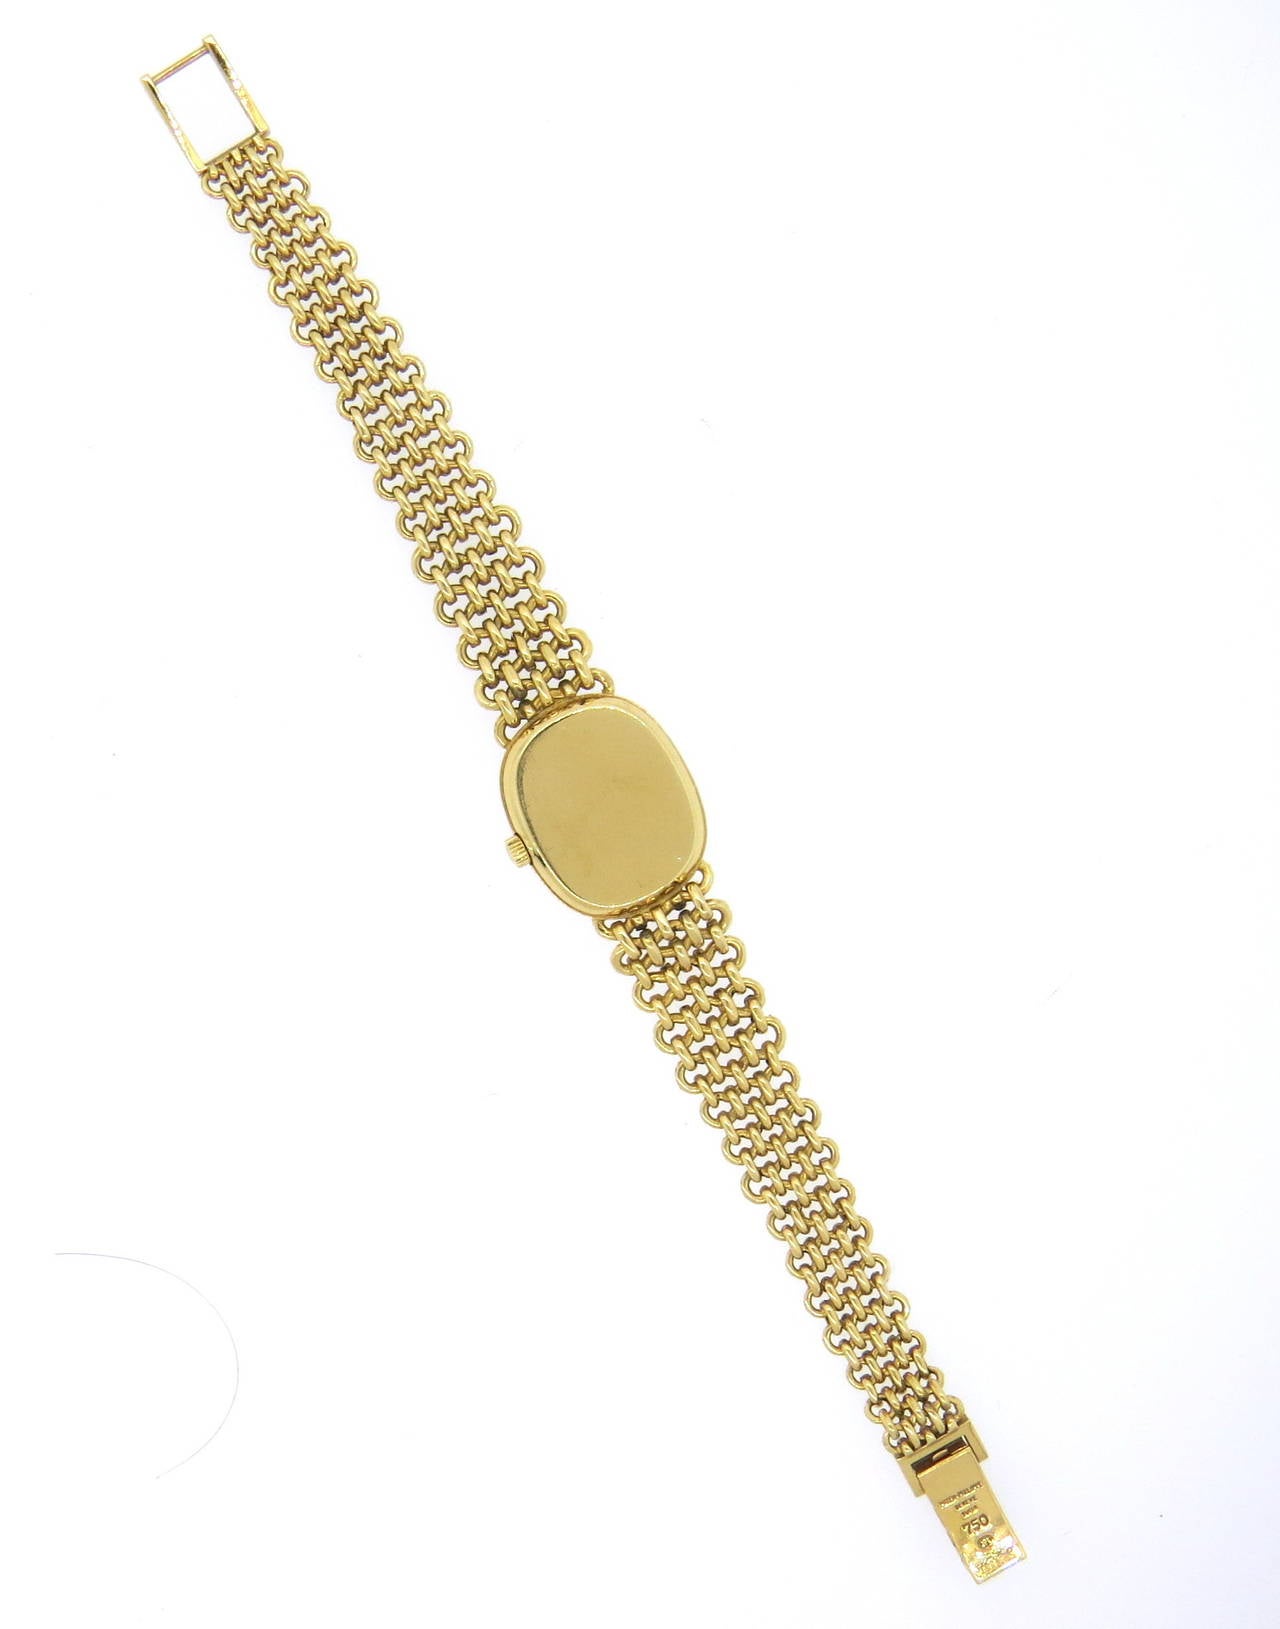 Women's Patek Philippe Lady's Gold Bracelet Wristwatch Ref 4464